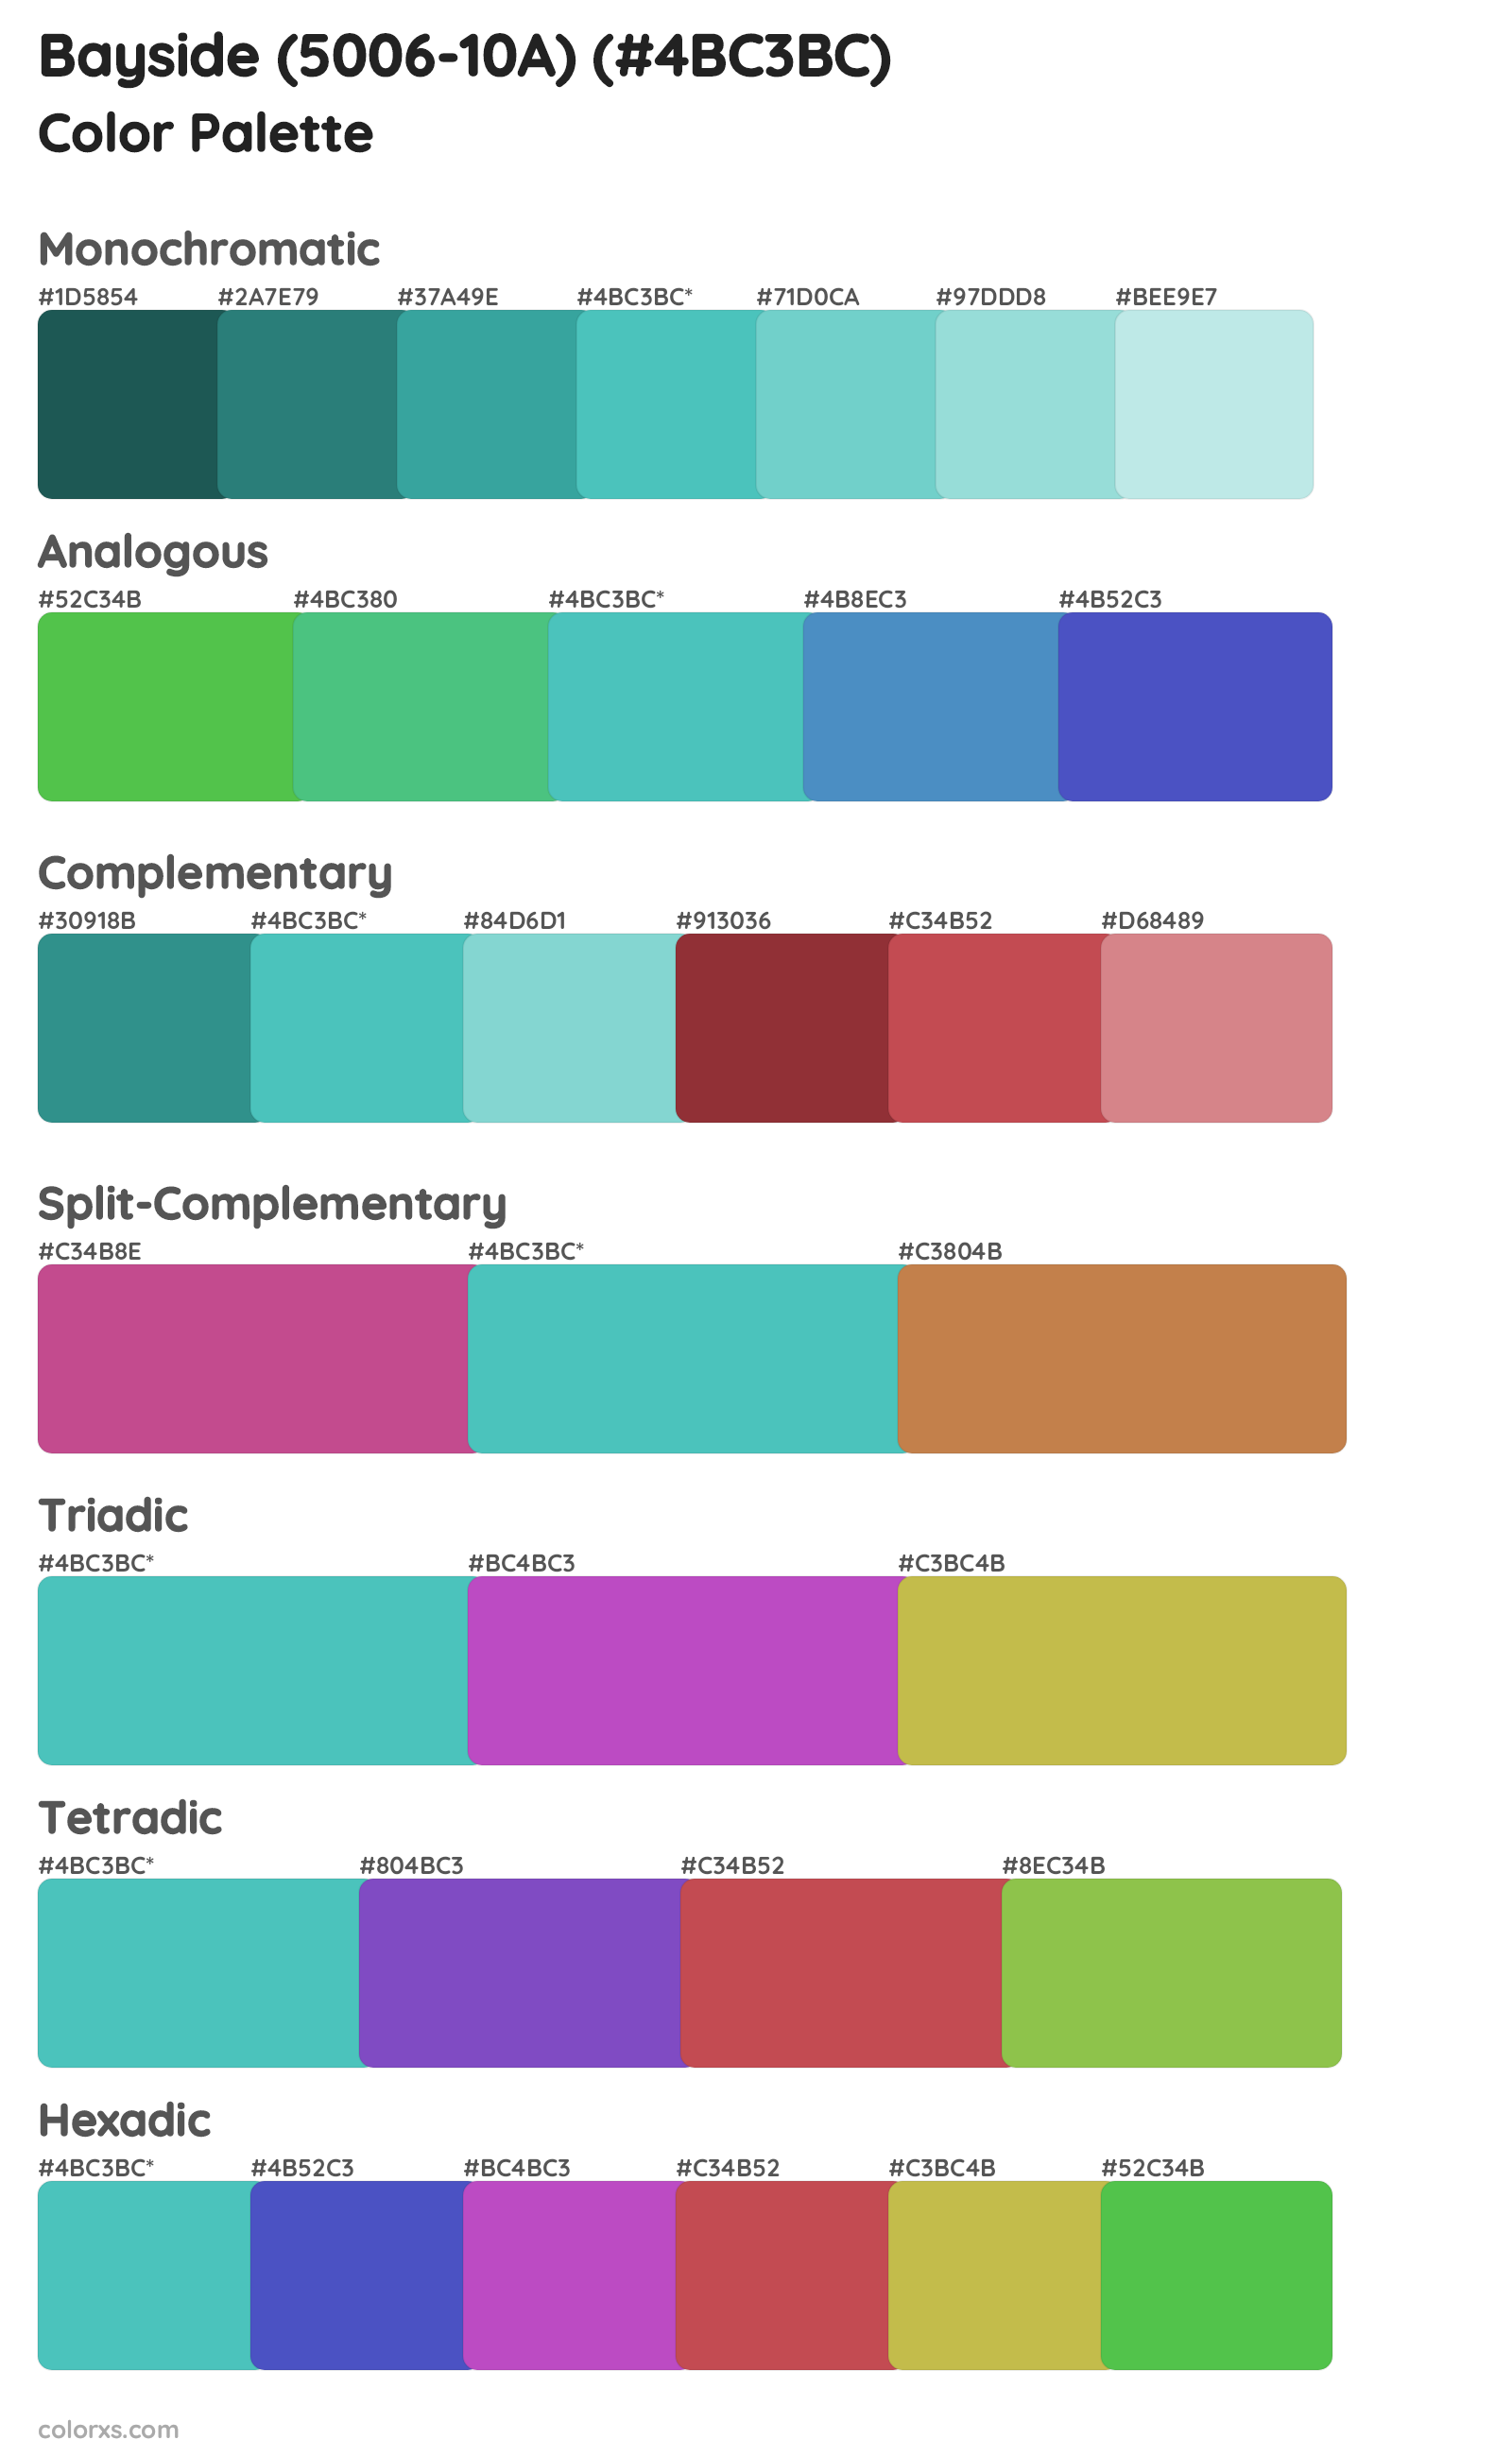 Bayside (5006-10A) Color Scheme Palettes